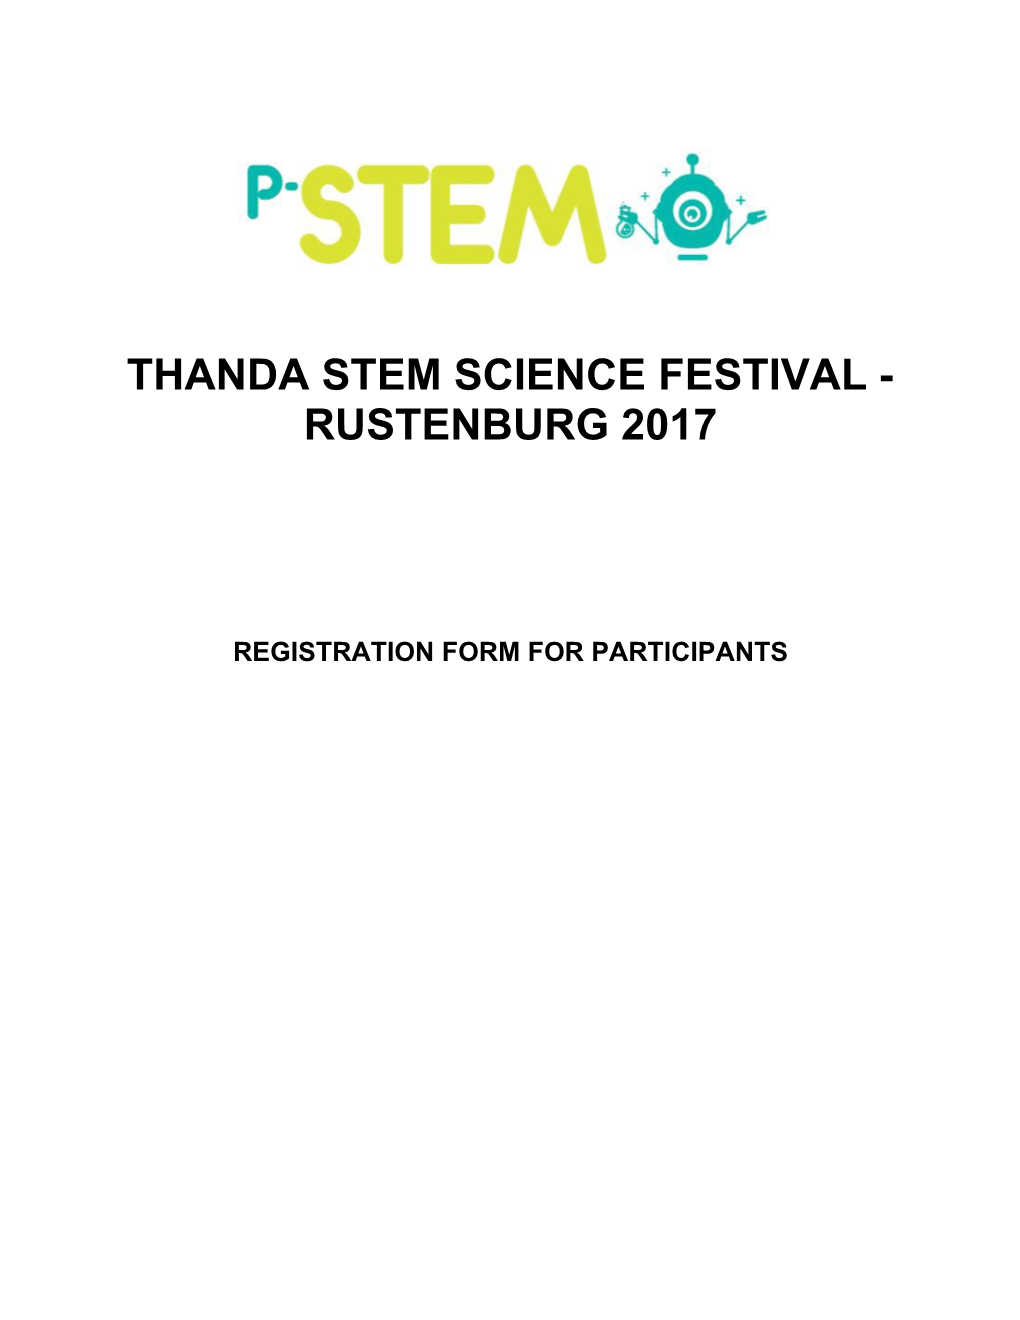 Thanda Stem Science Festival - Rustenburg 2017